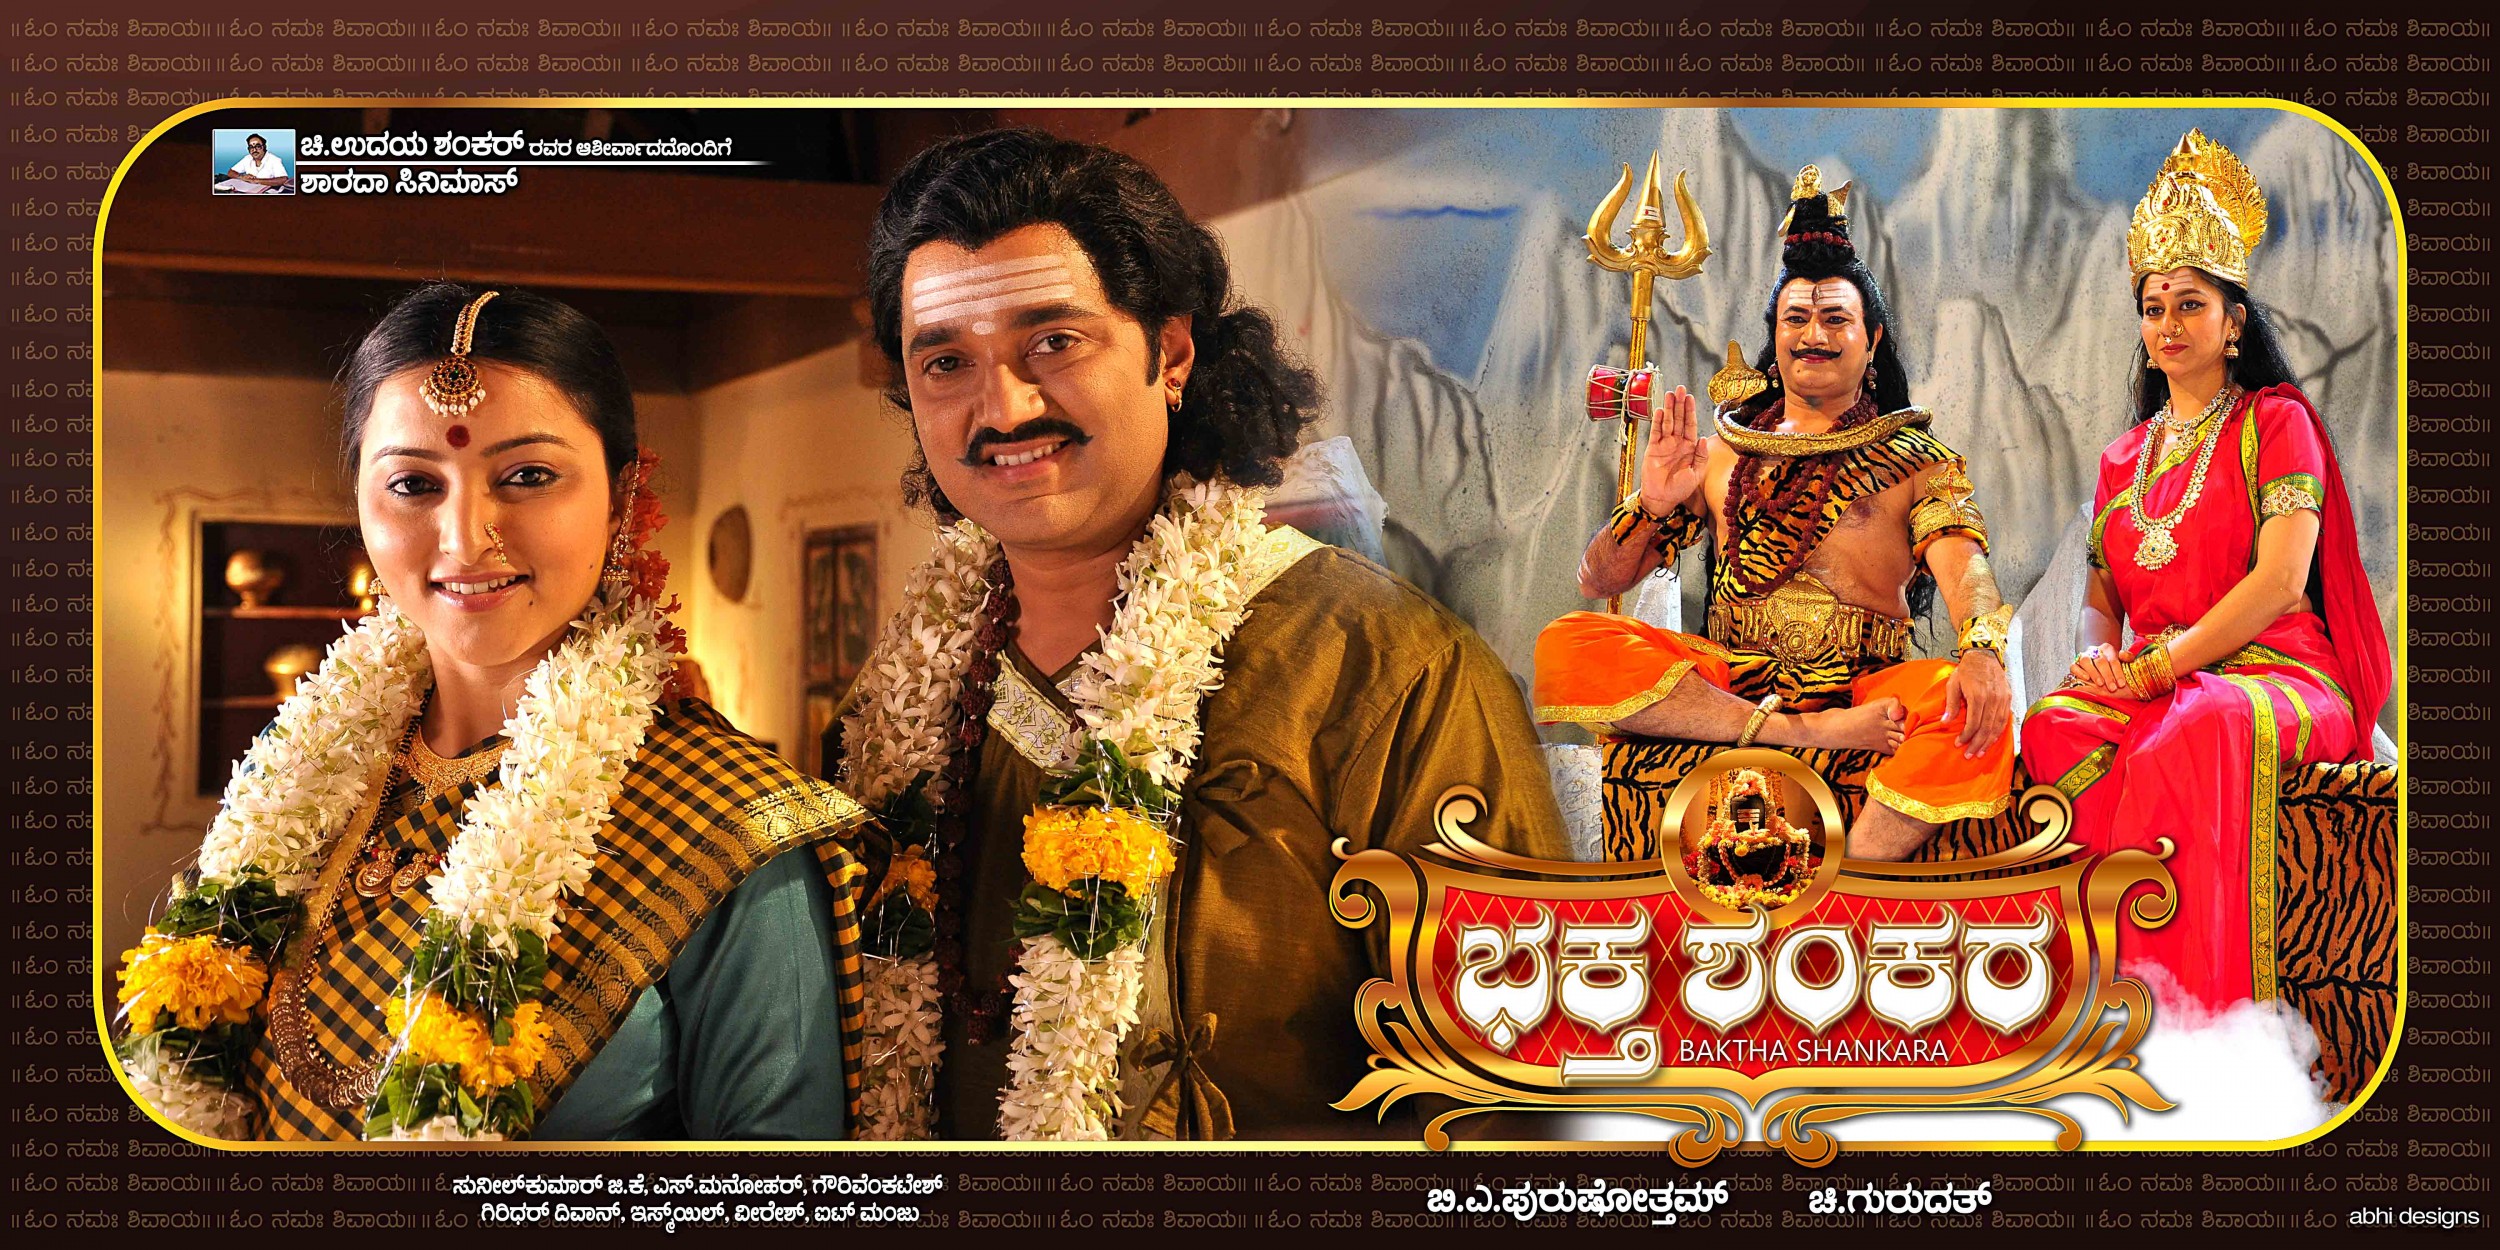 Mega Sized Movie Poster Image for Baktha Shankara (#8 of 10)